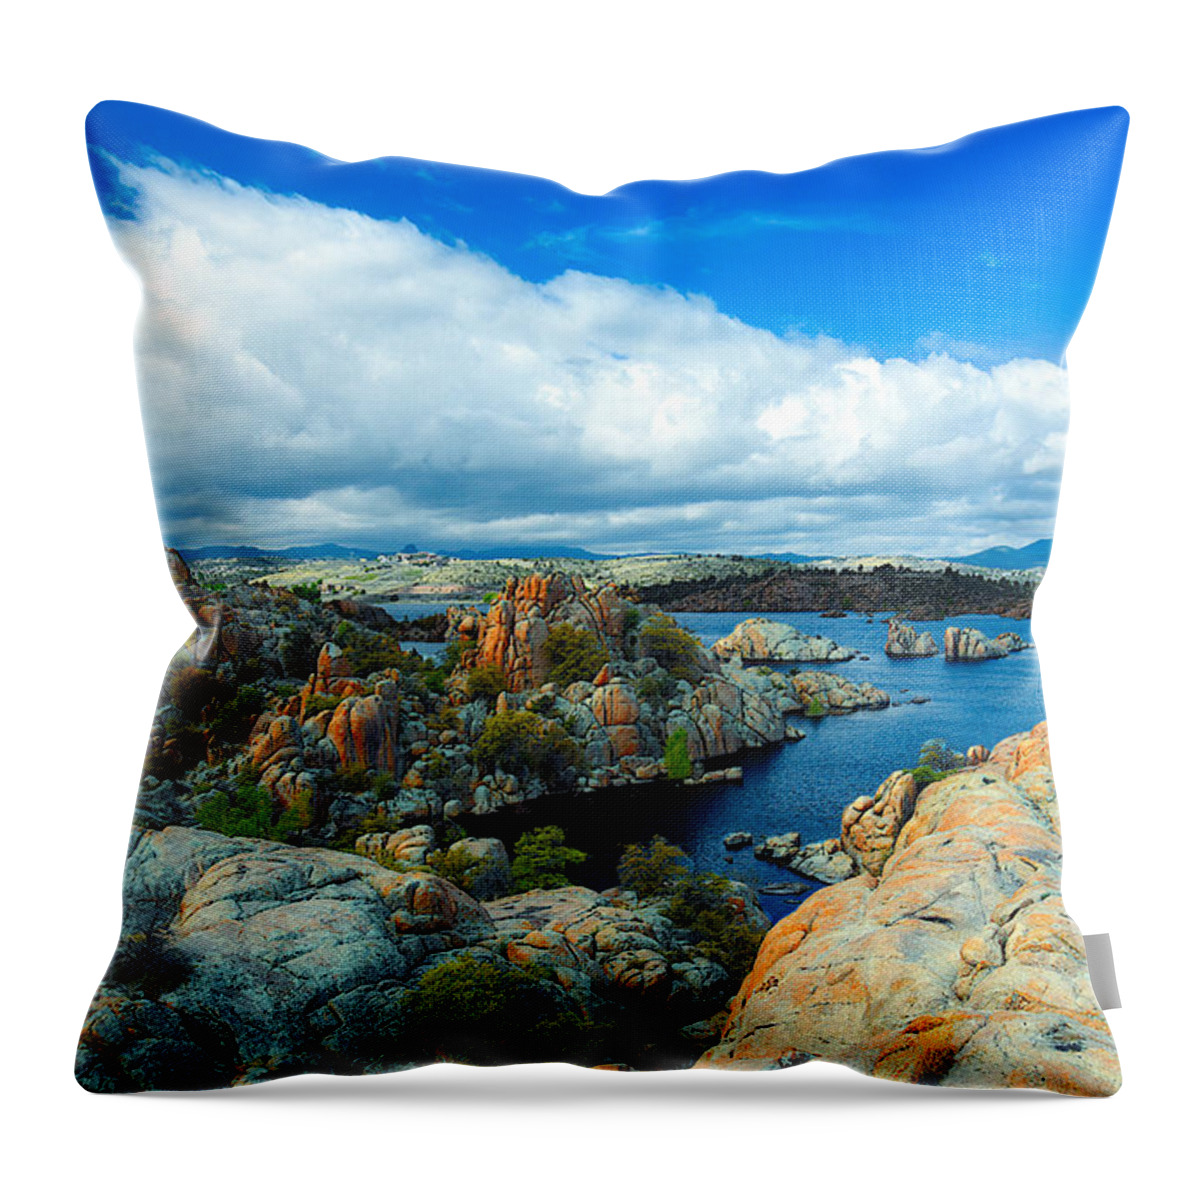 Prescott Throw Pillow featuring the photograph Prescott Rocks by Richard Gehlbach